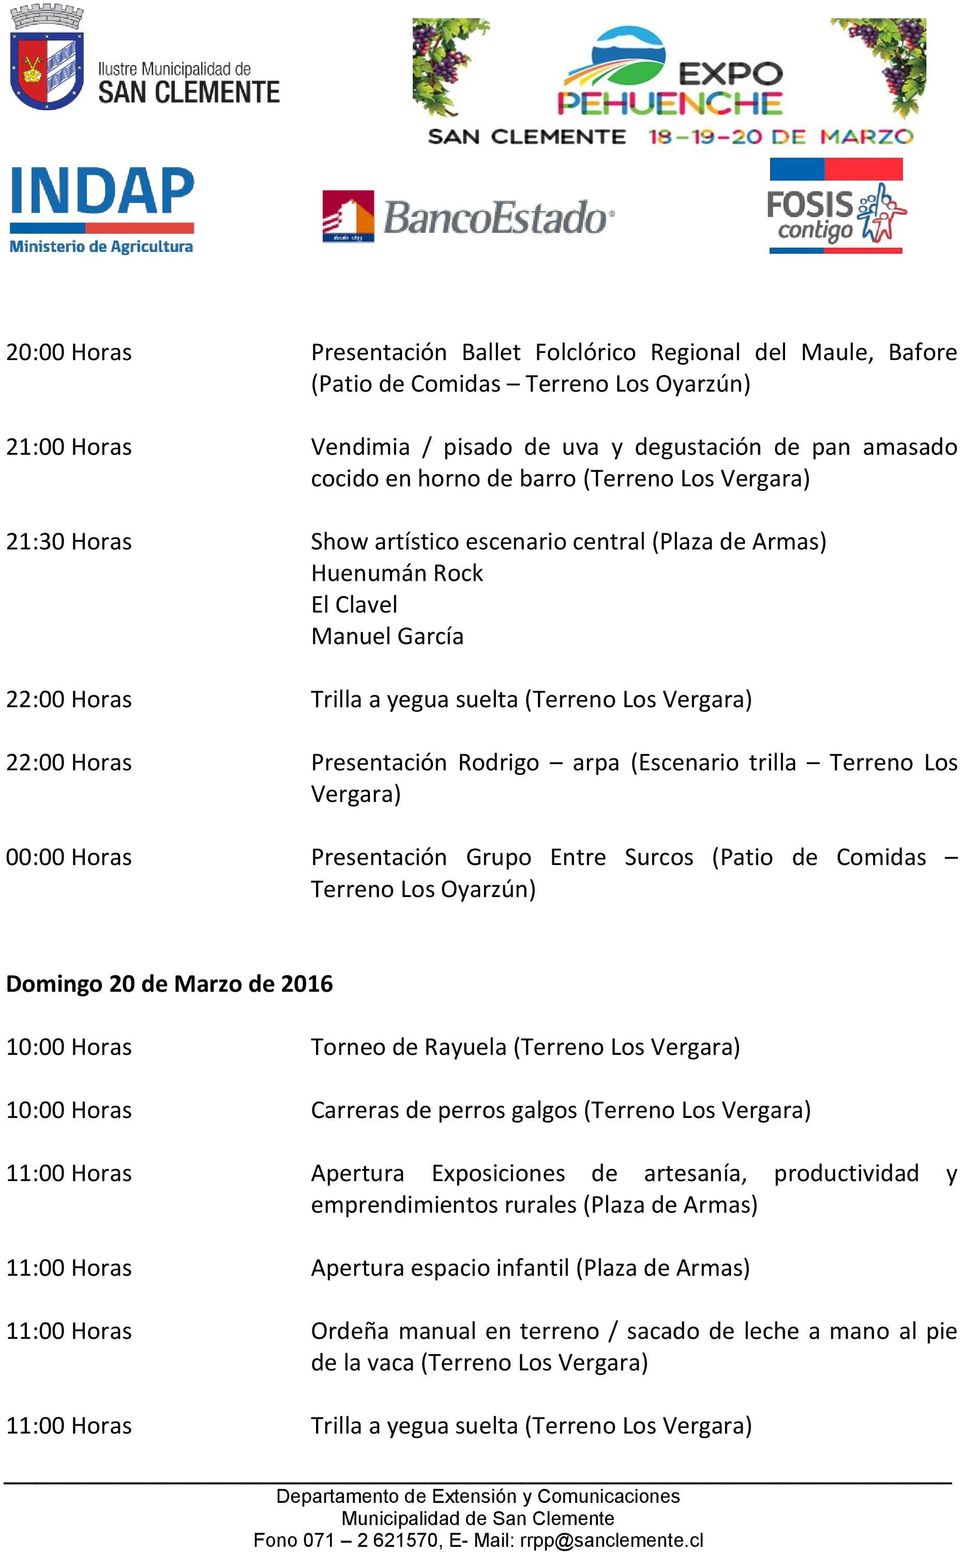 00:00 Horas Presentación Grupo Entre Surcos (Patio de Comidas Terreno Domingo 20 de Marzo de 2016 10:00 Horas Torneo de Rayuela (Terreno Los 10:00 Horas Carreras de perros galgos (Terreno Los 11:00